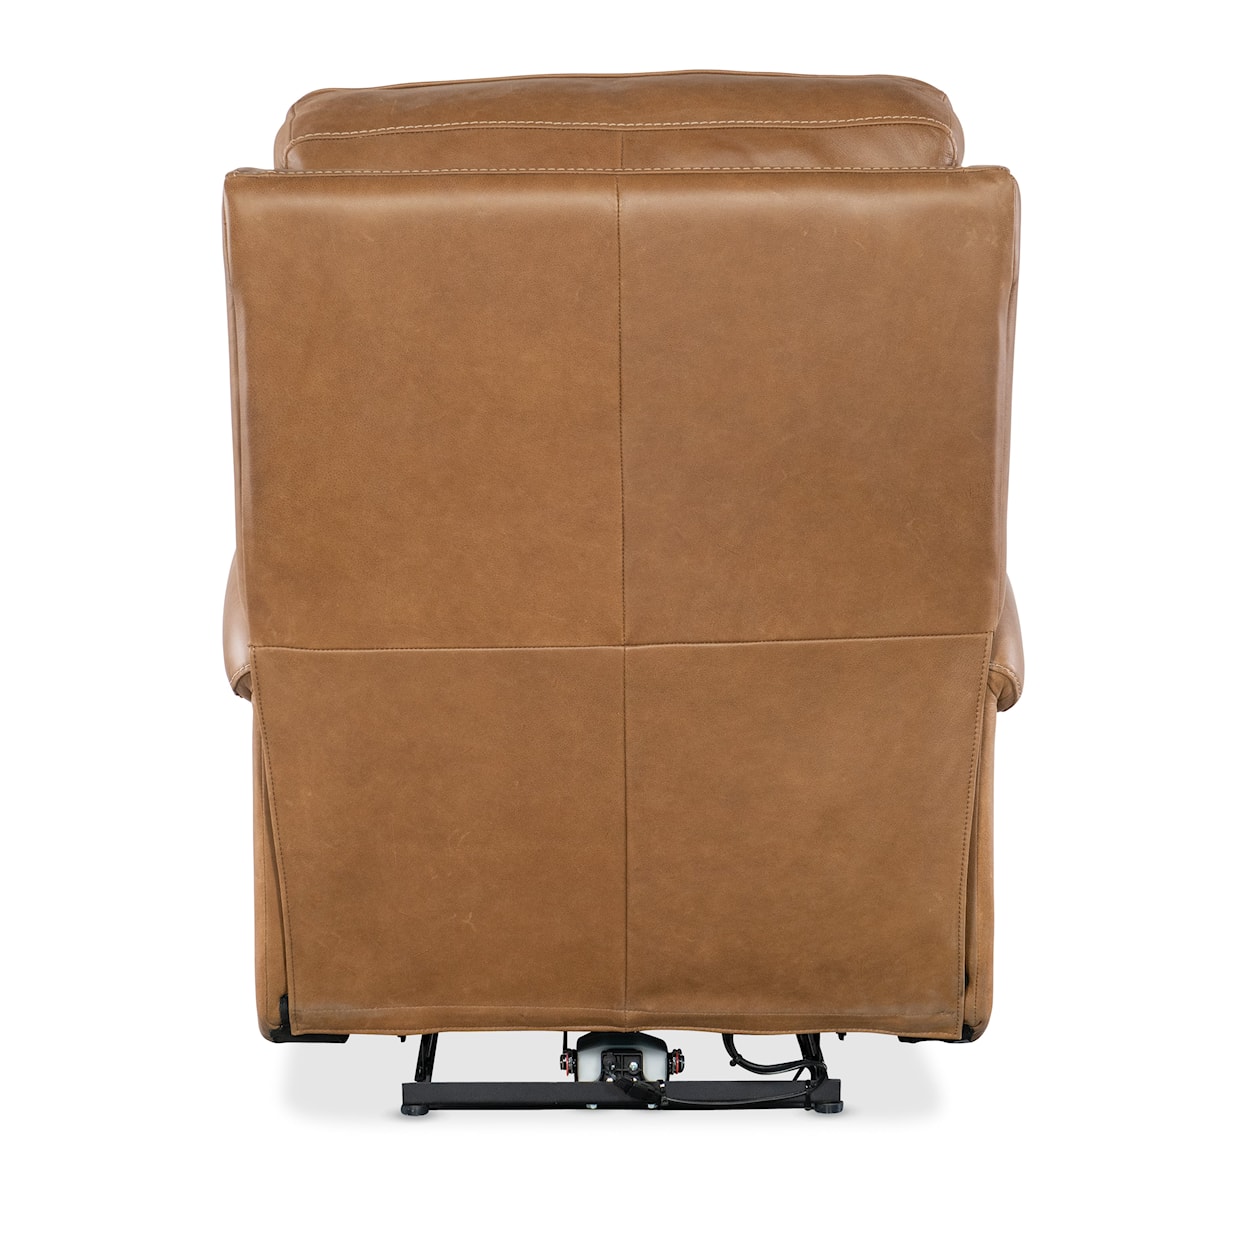 Hooker Furniture SS Power Recliner w/Power Headrest